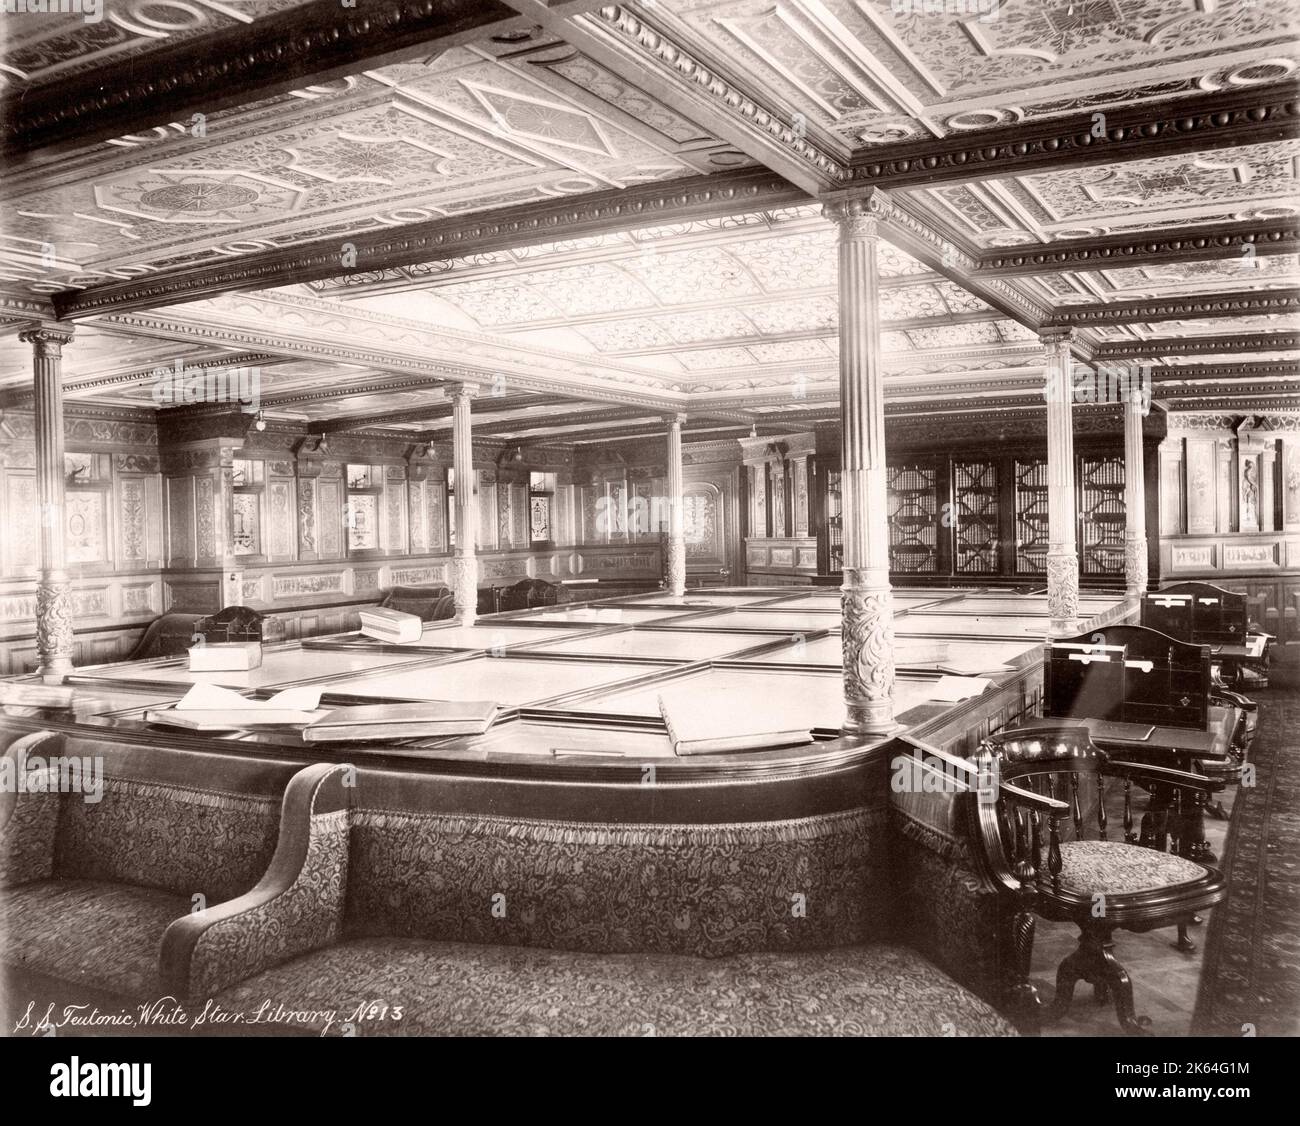 1889 photographie - RMS Teutonic - d'un album d'images relatives au lancement du navire, qui a été construit par Harland et Wolff à Belfast, pour la ligne d'étoile blanche - plus tard pour atteindre la notoriété en tant que propriétaire du Titanic. L'album montre les intérieurs du navire, un membre de l'équipage, des croisières d'essai, y compris une visite à bord par le Kaiser allemand et le Prince de Galles, ainsi que de nombreuses images d'autres visiteurs. Banque D'Images